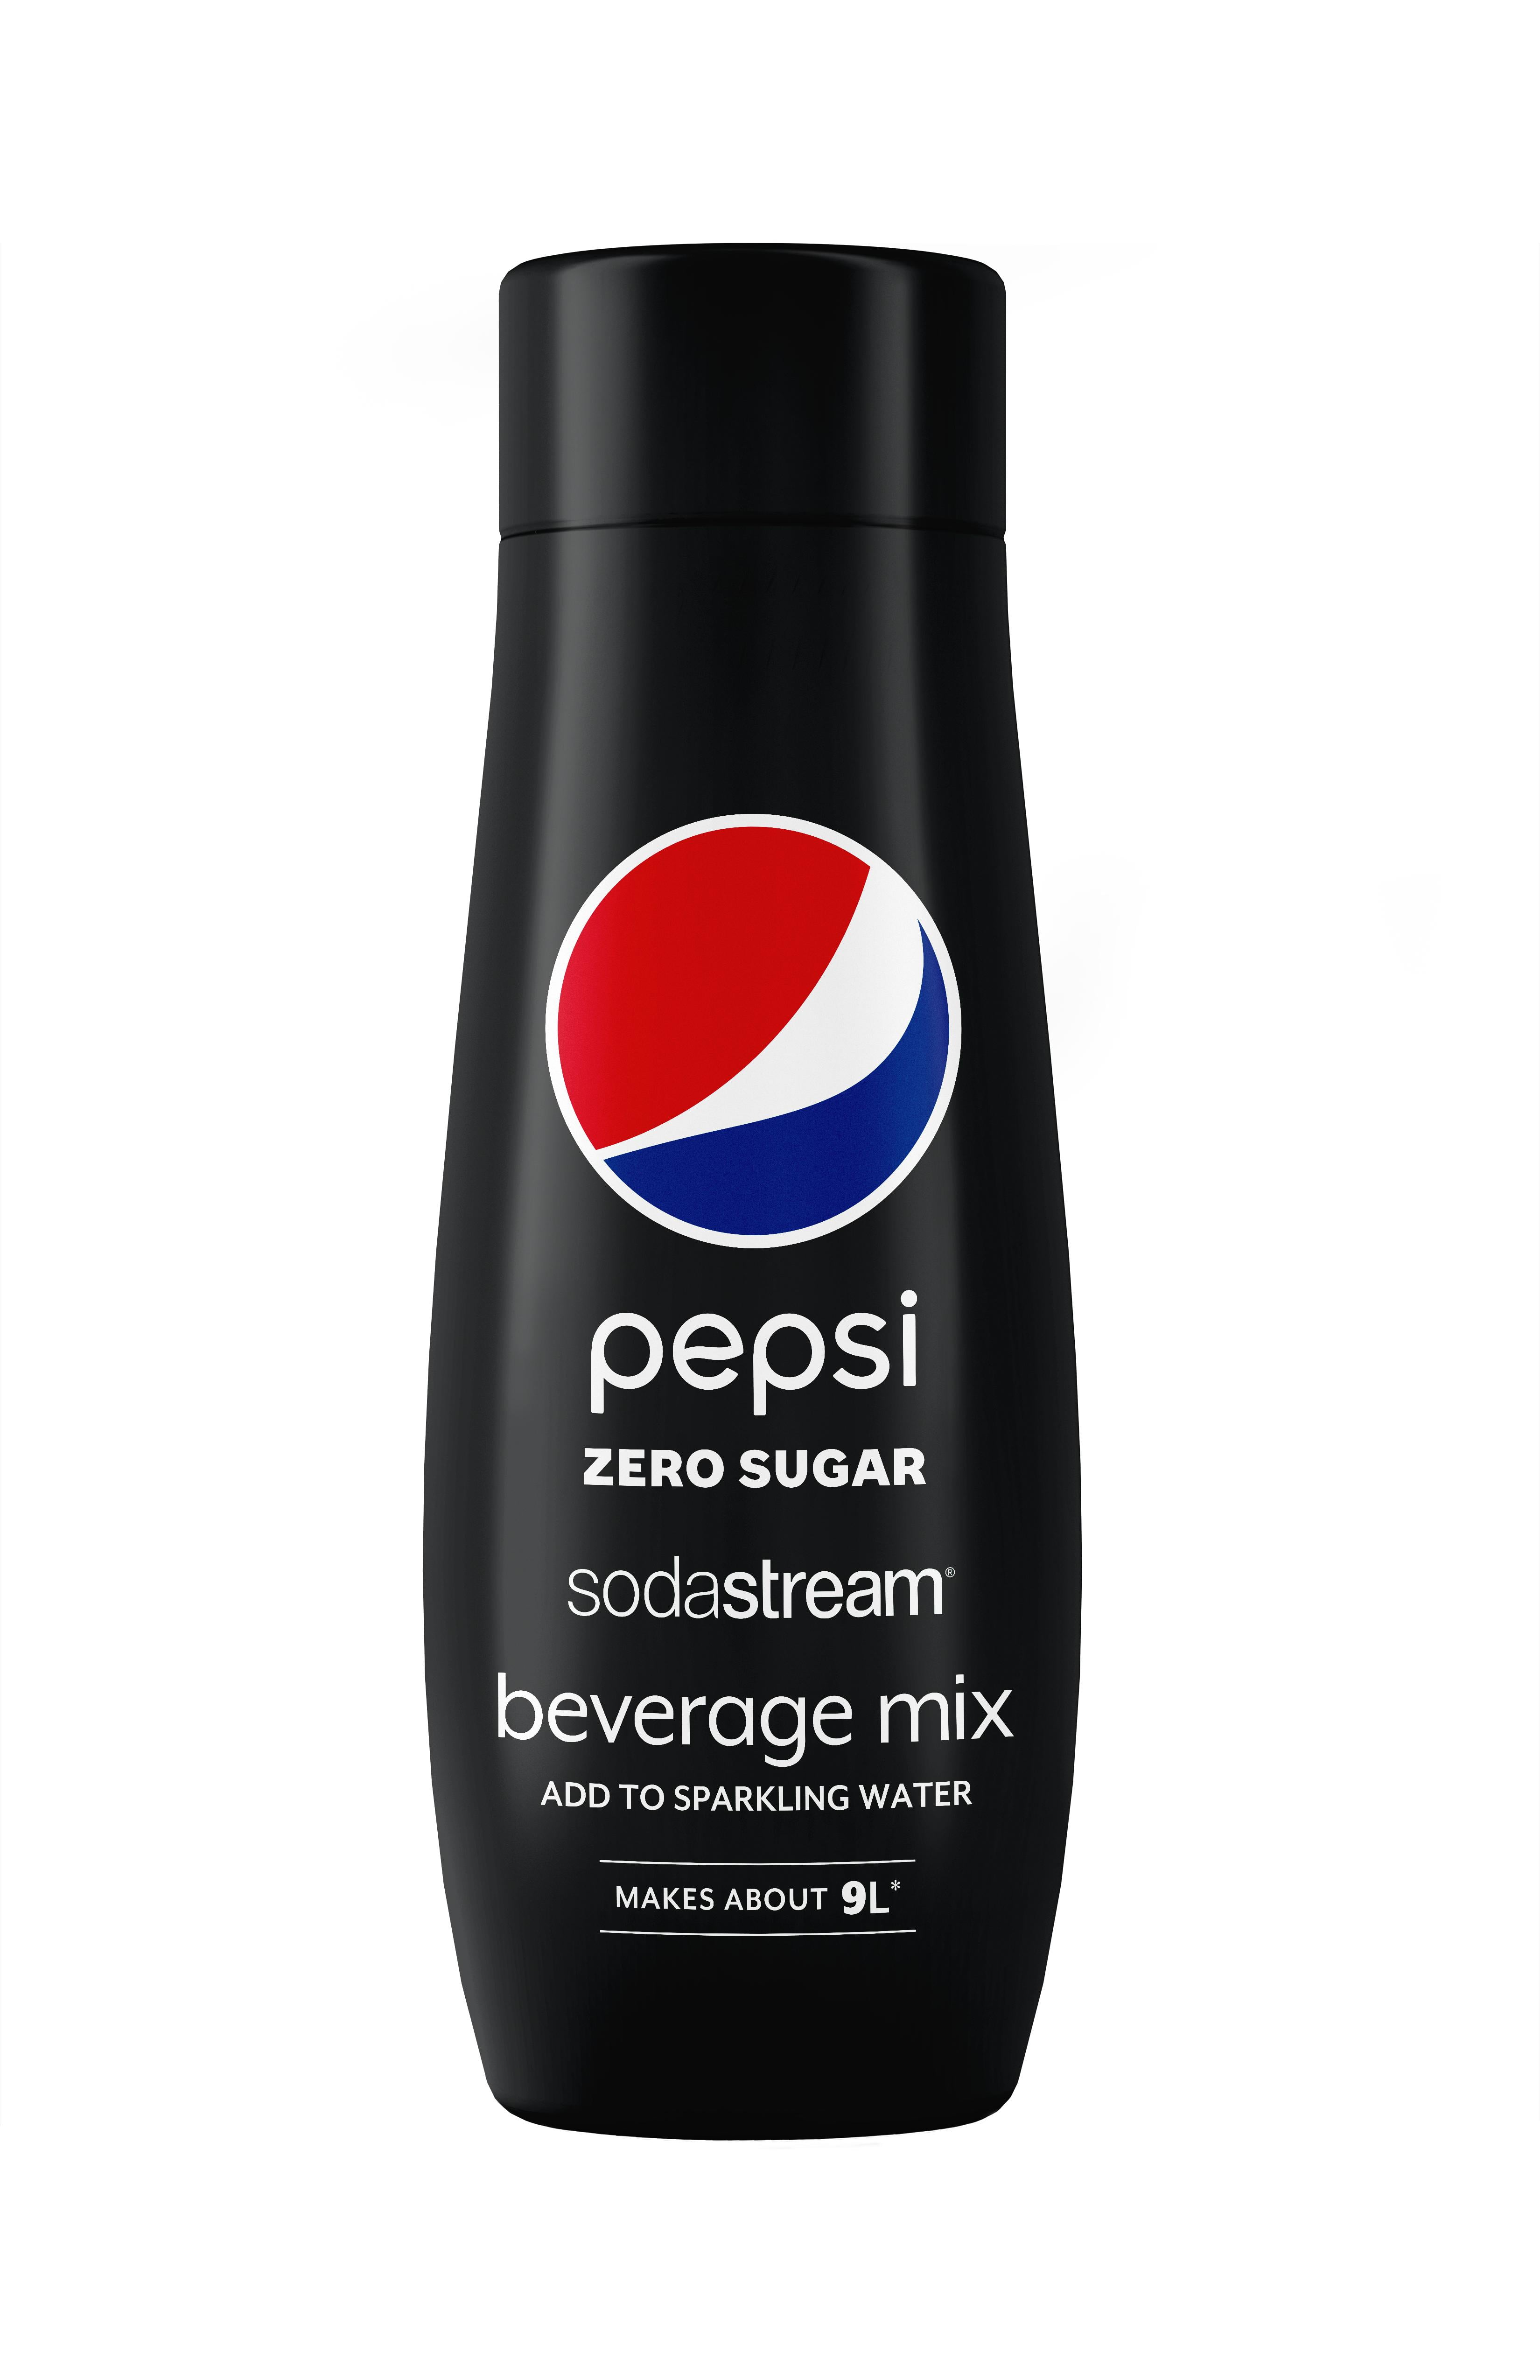 Sodastream Syrup Pepsi Mirinda 7up Flavor Soda Drink Soda Stream  Concentrate